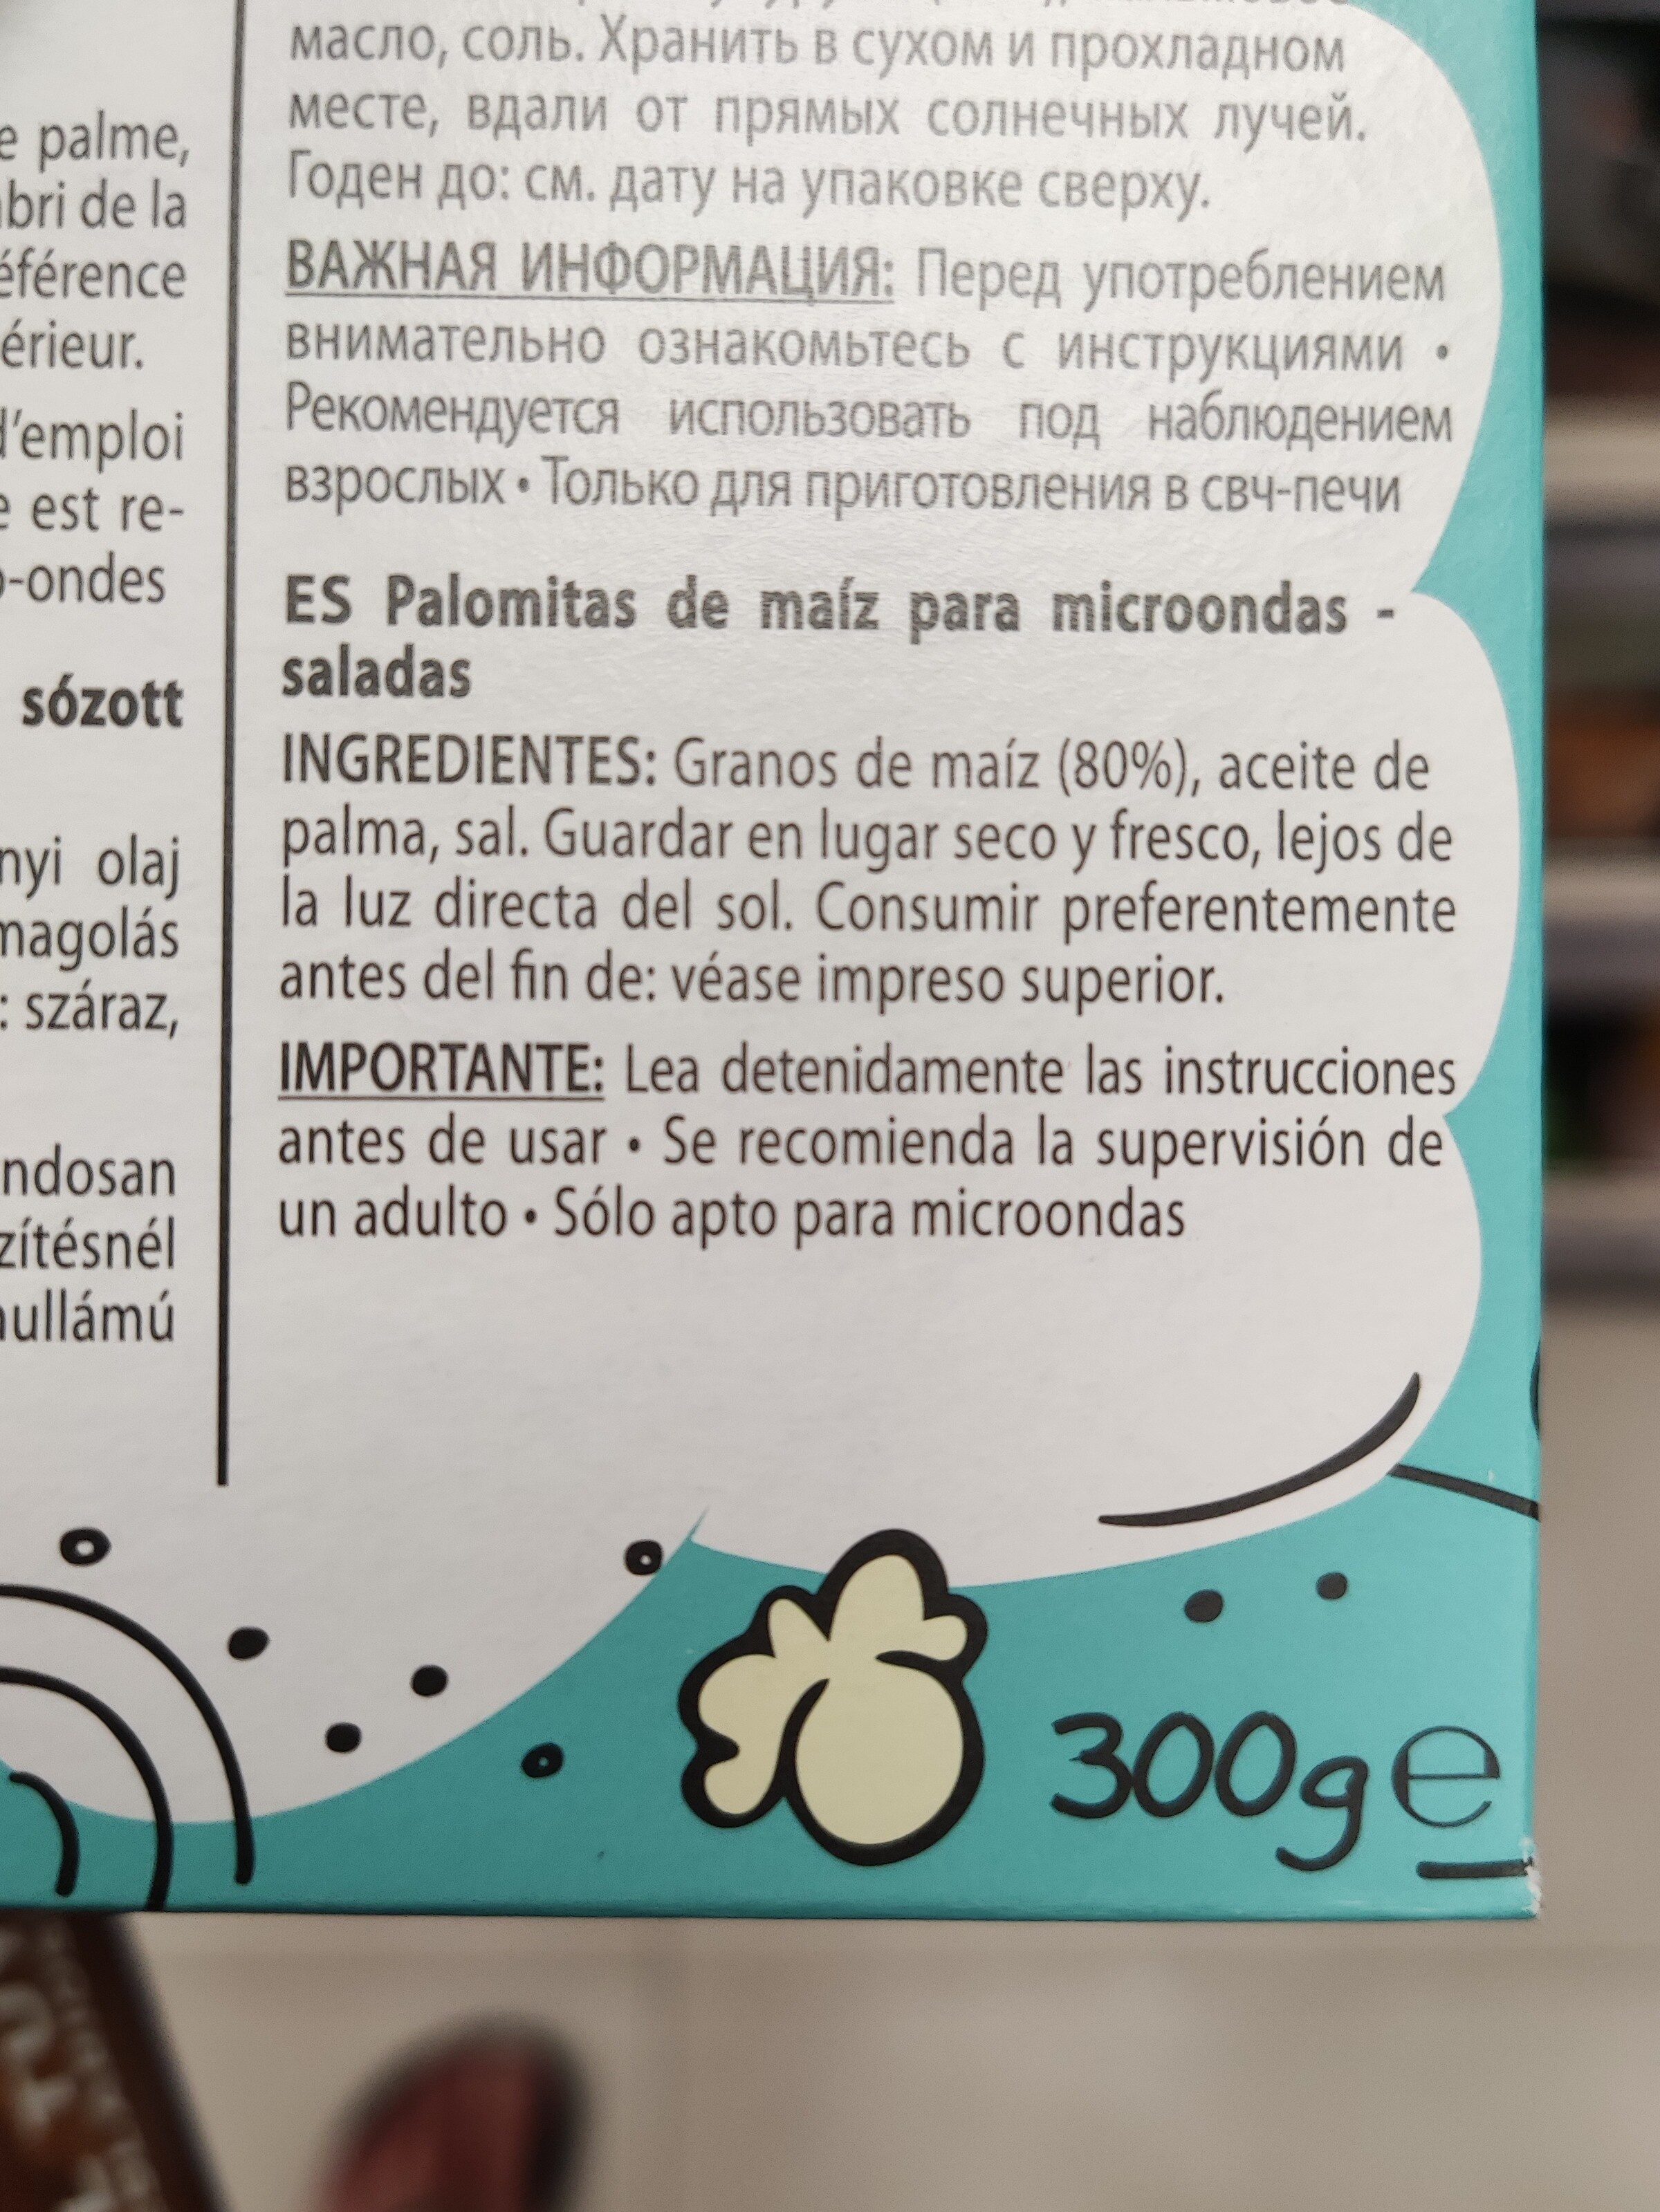 Palomitas saladas de microondas - Ingredientes